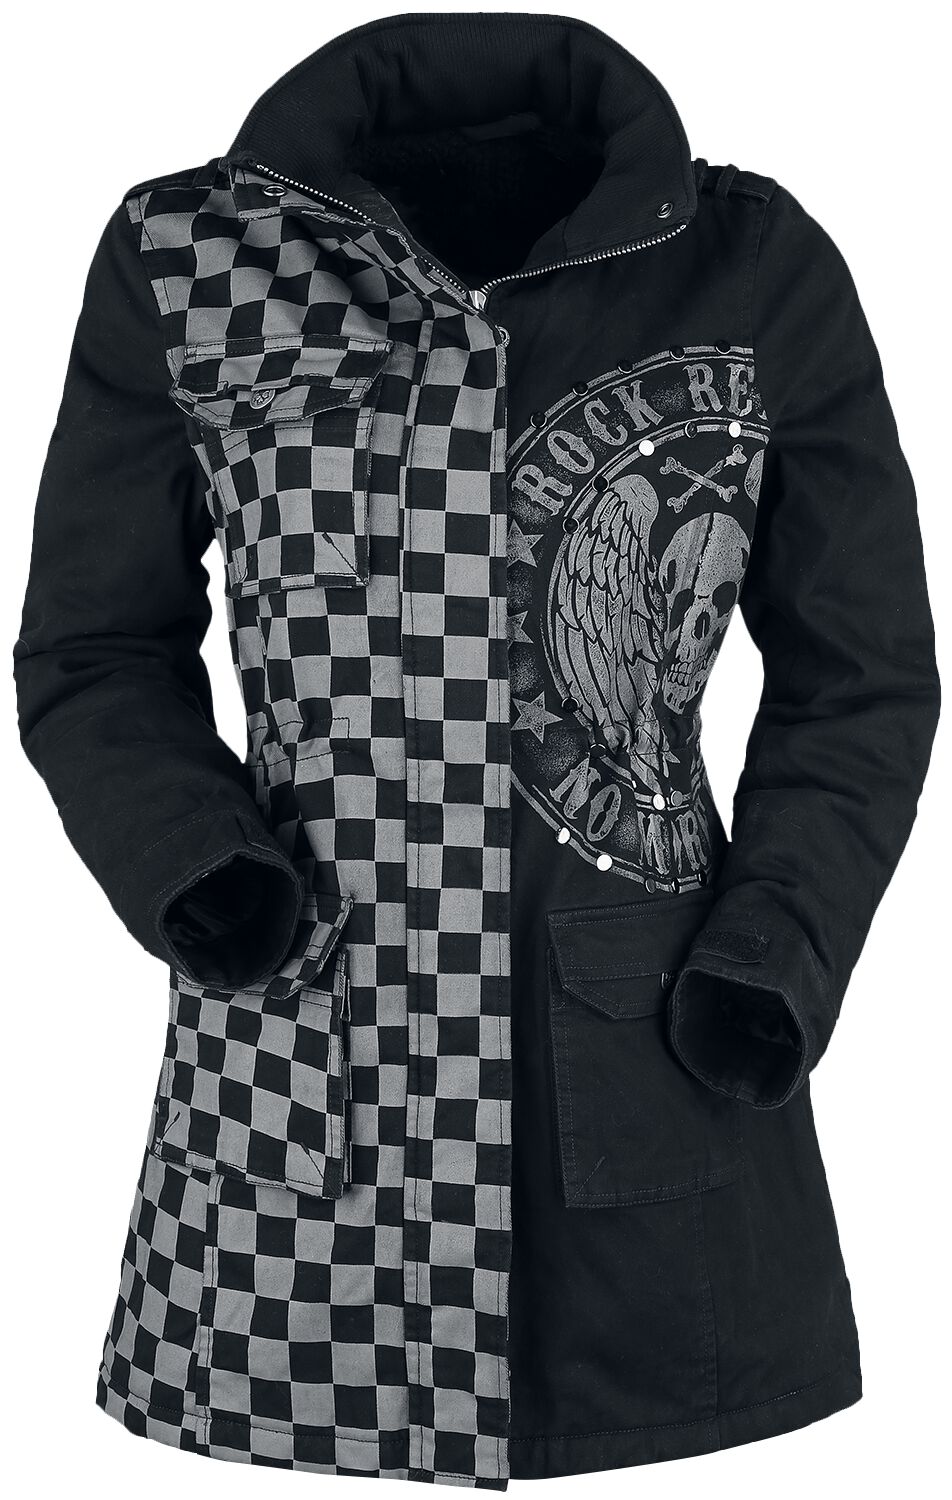 Rock Rebel by EMP - Rock Winterjacke - schwarz/graue Jacke mit Nieten und Print - S bis XXL - für Damen - Größe L - grau/schwarz